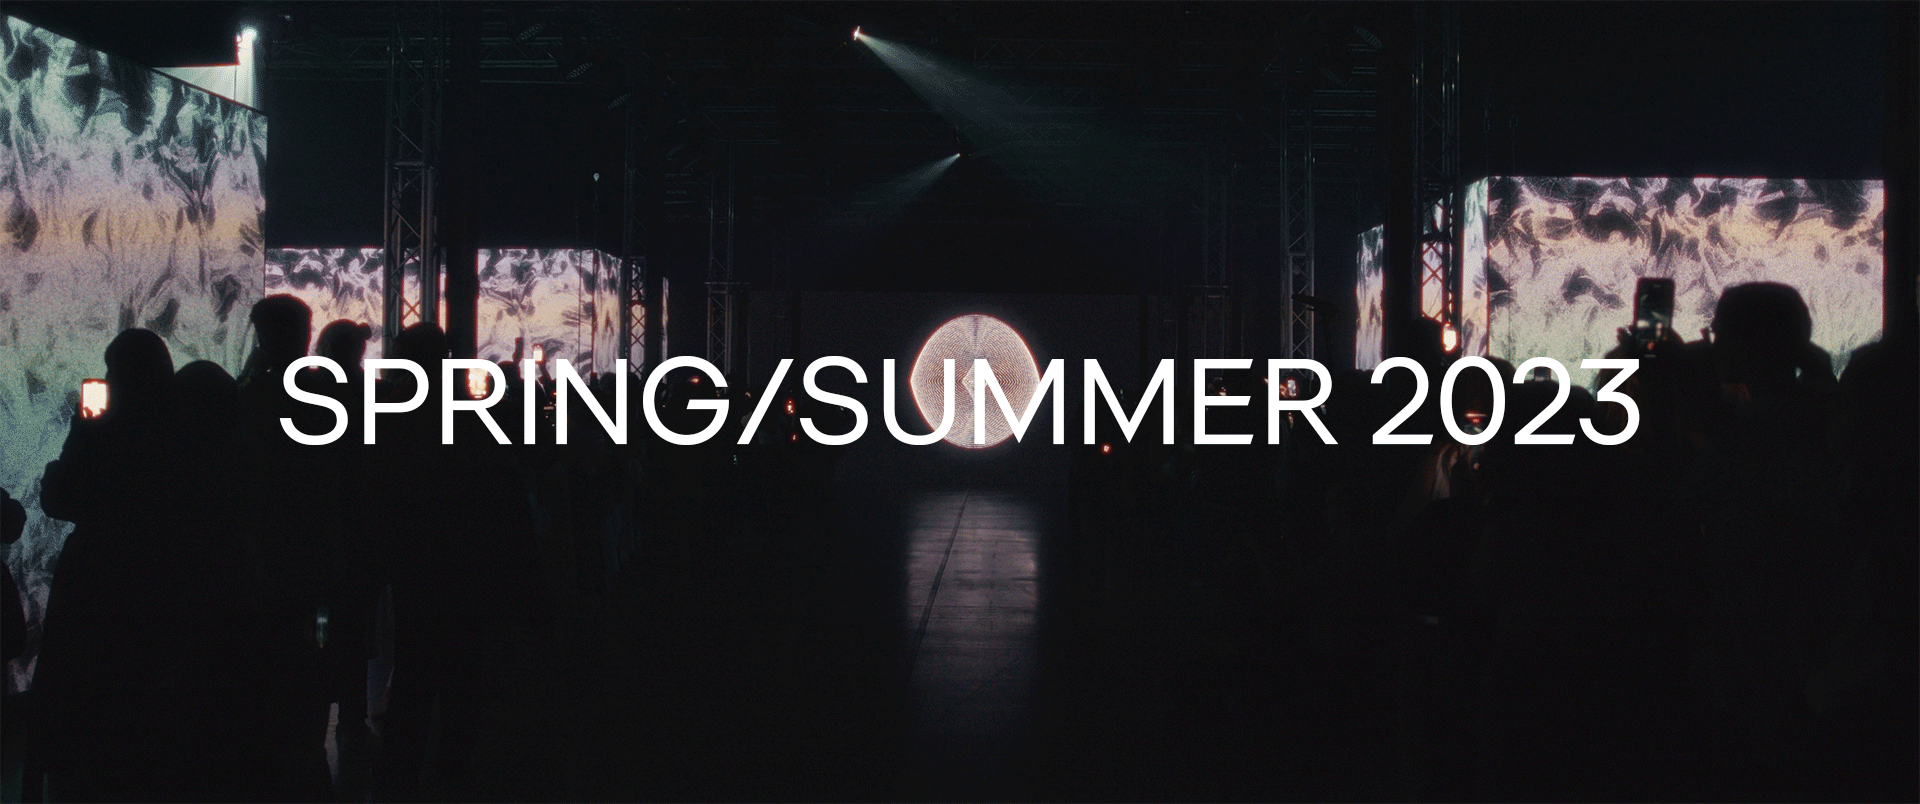 SPRING/SUMMER 2023